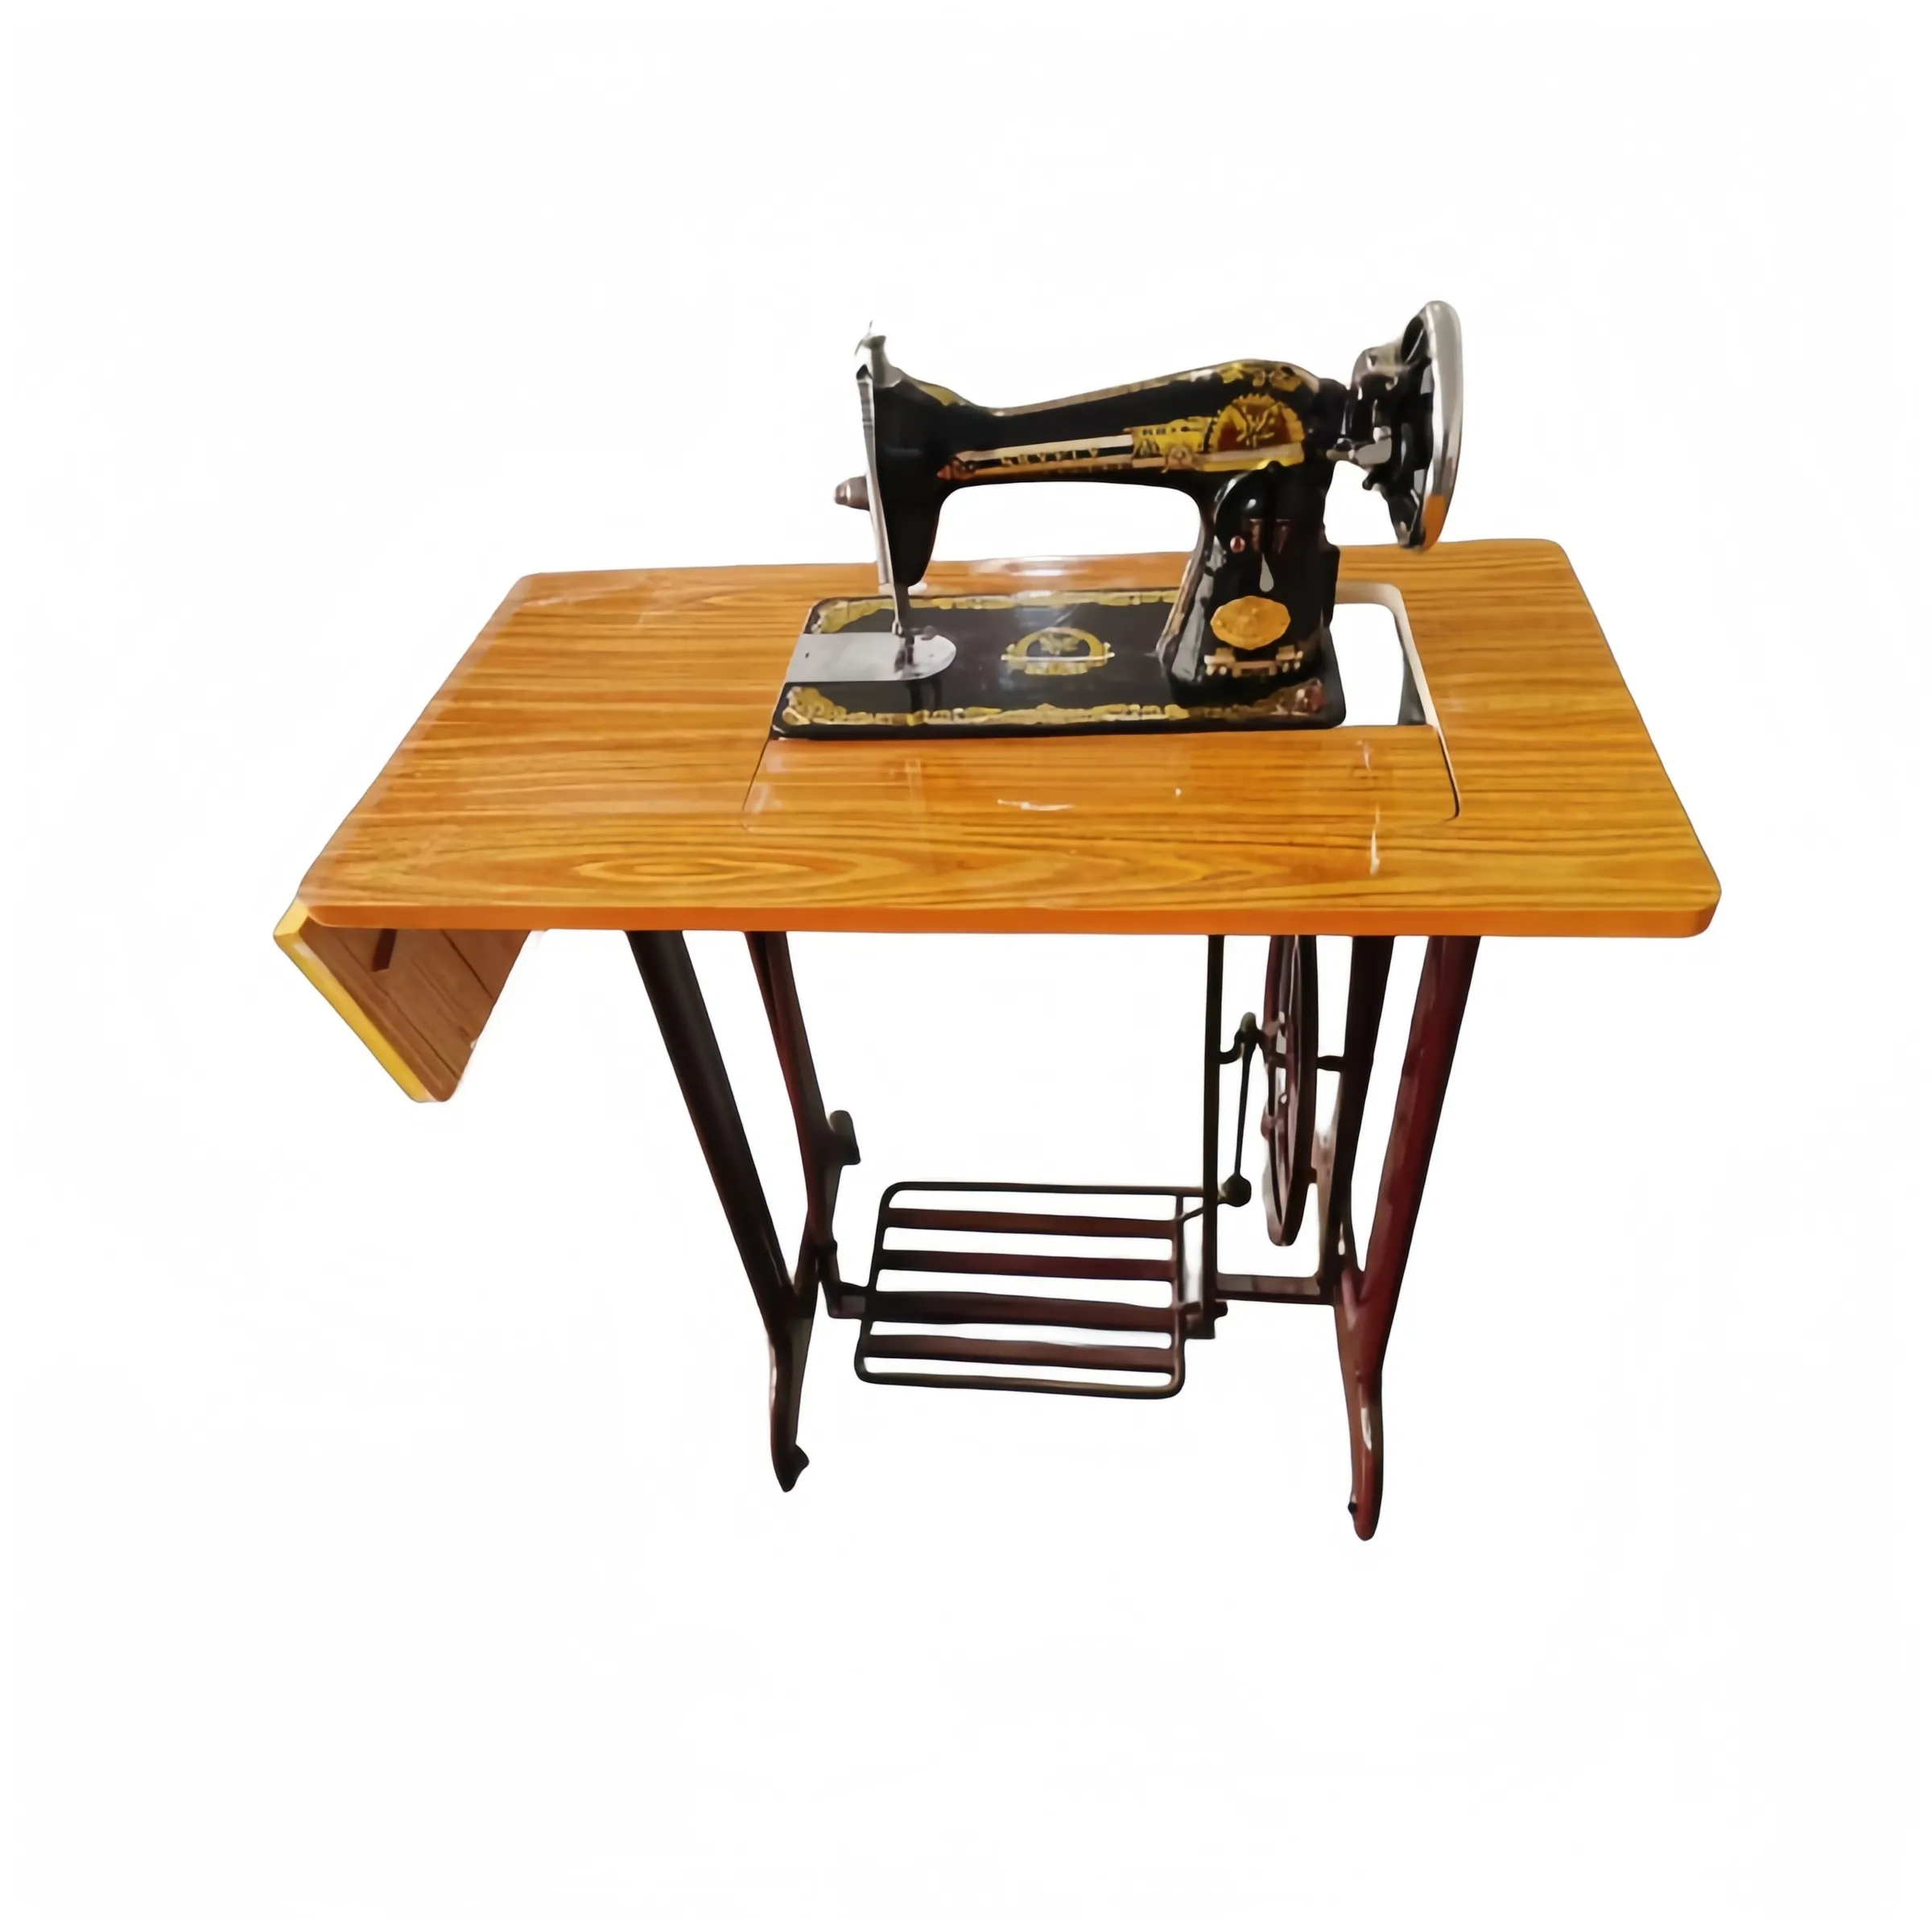 Máquina DE COSER DE ropa tradicional muy popular, la máquina de coser de juego completo más barata (soporte de mesa de cabeza JA)